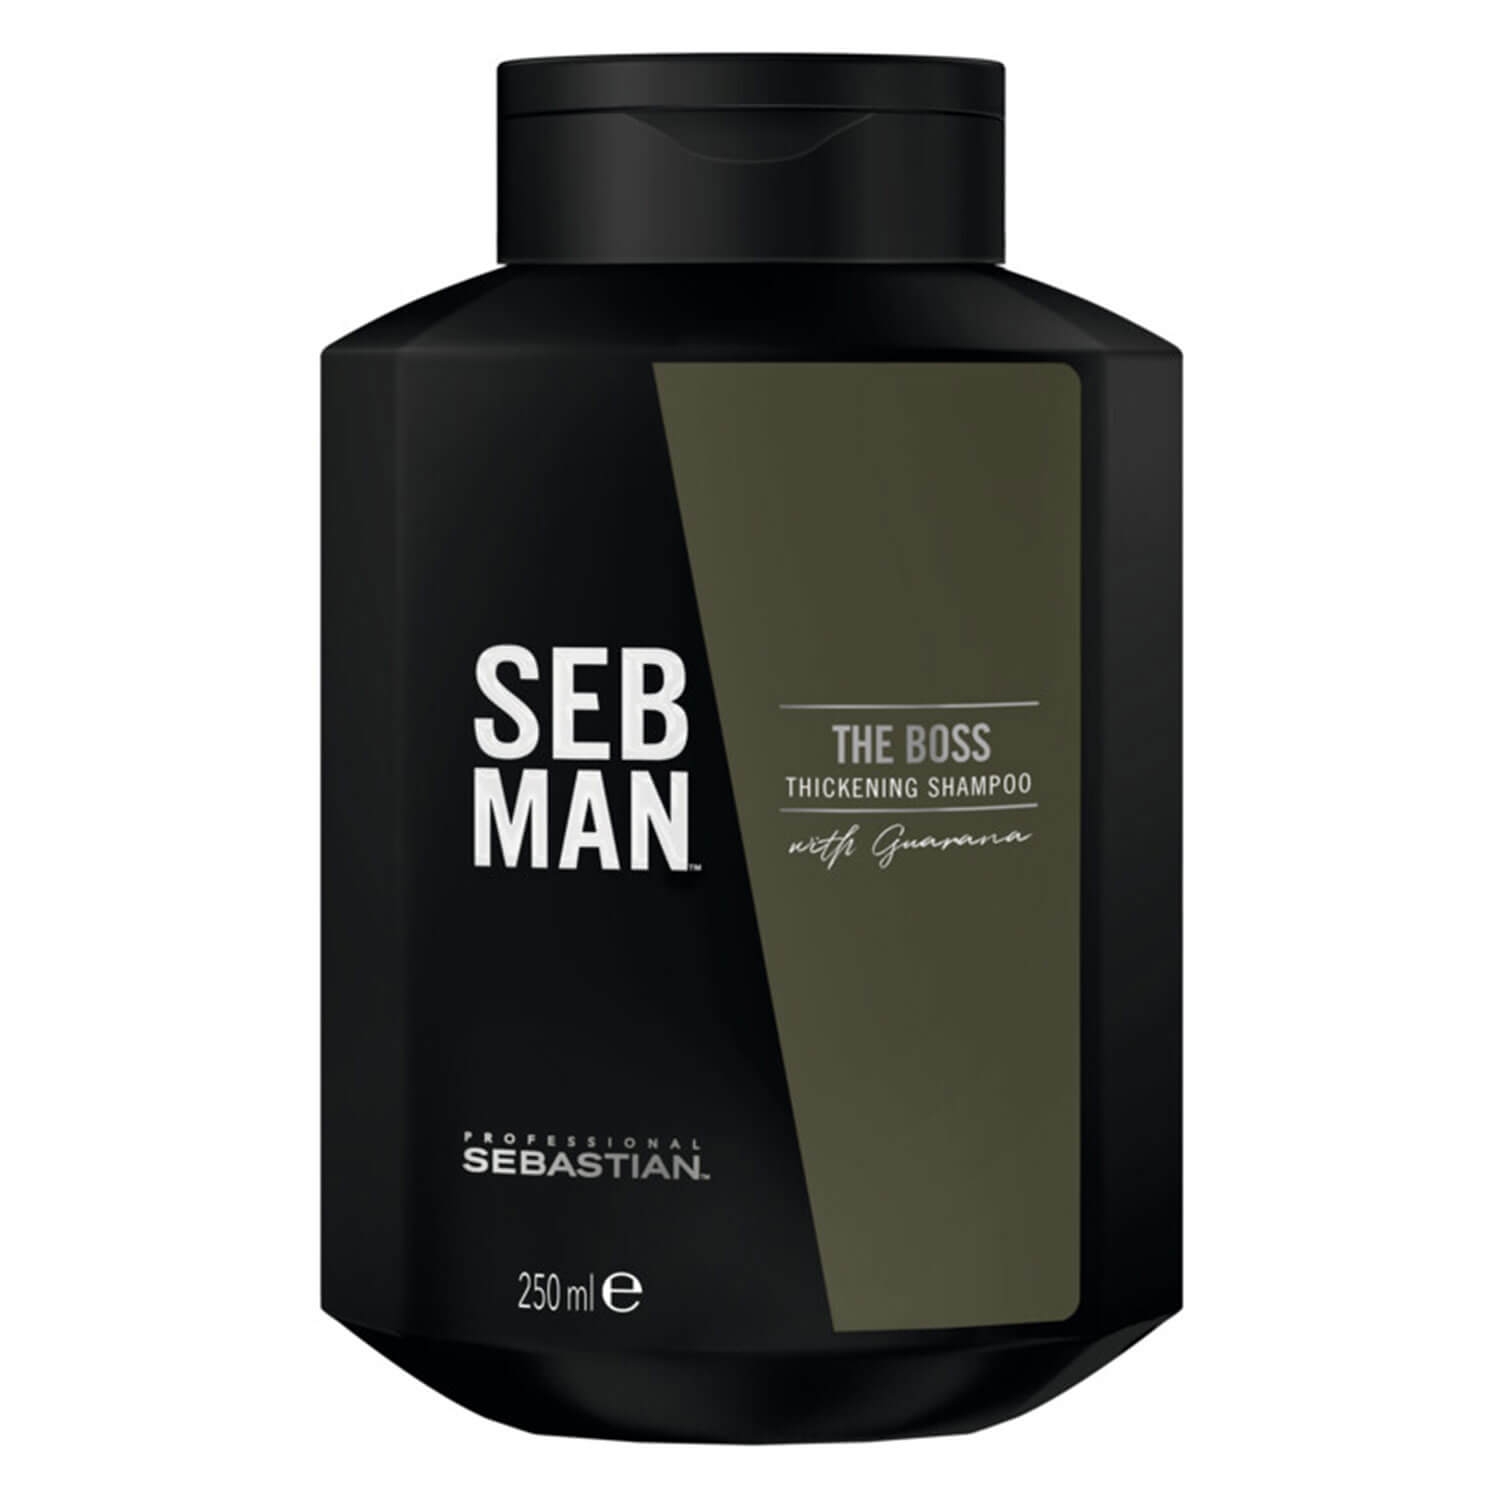 Produktbild von SEB MAN - The Boss Thickening Shampoo